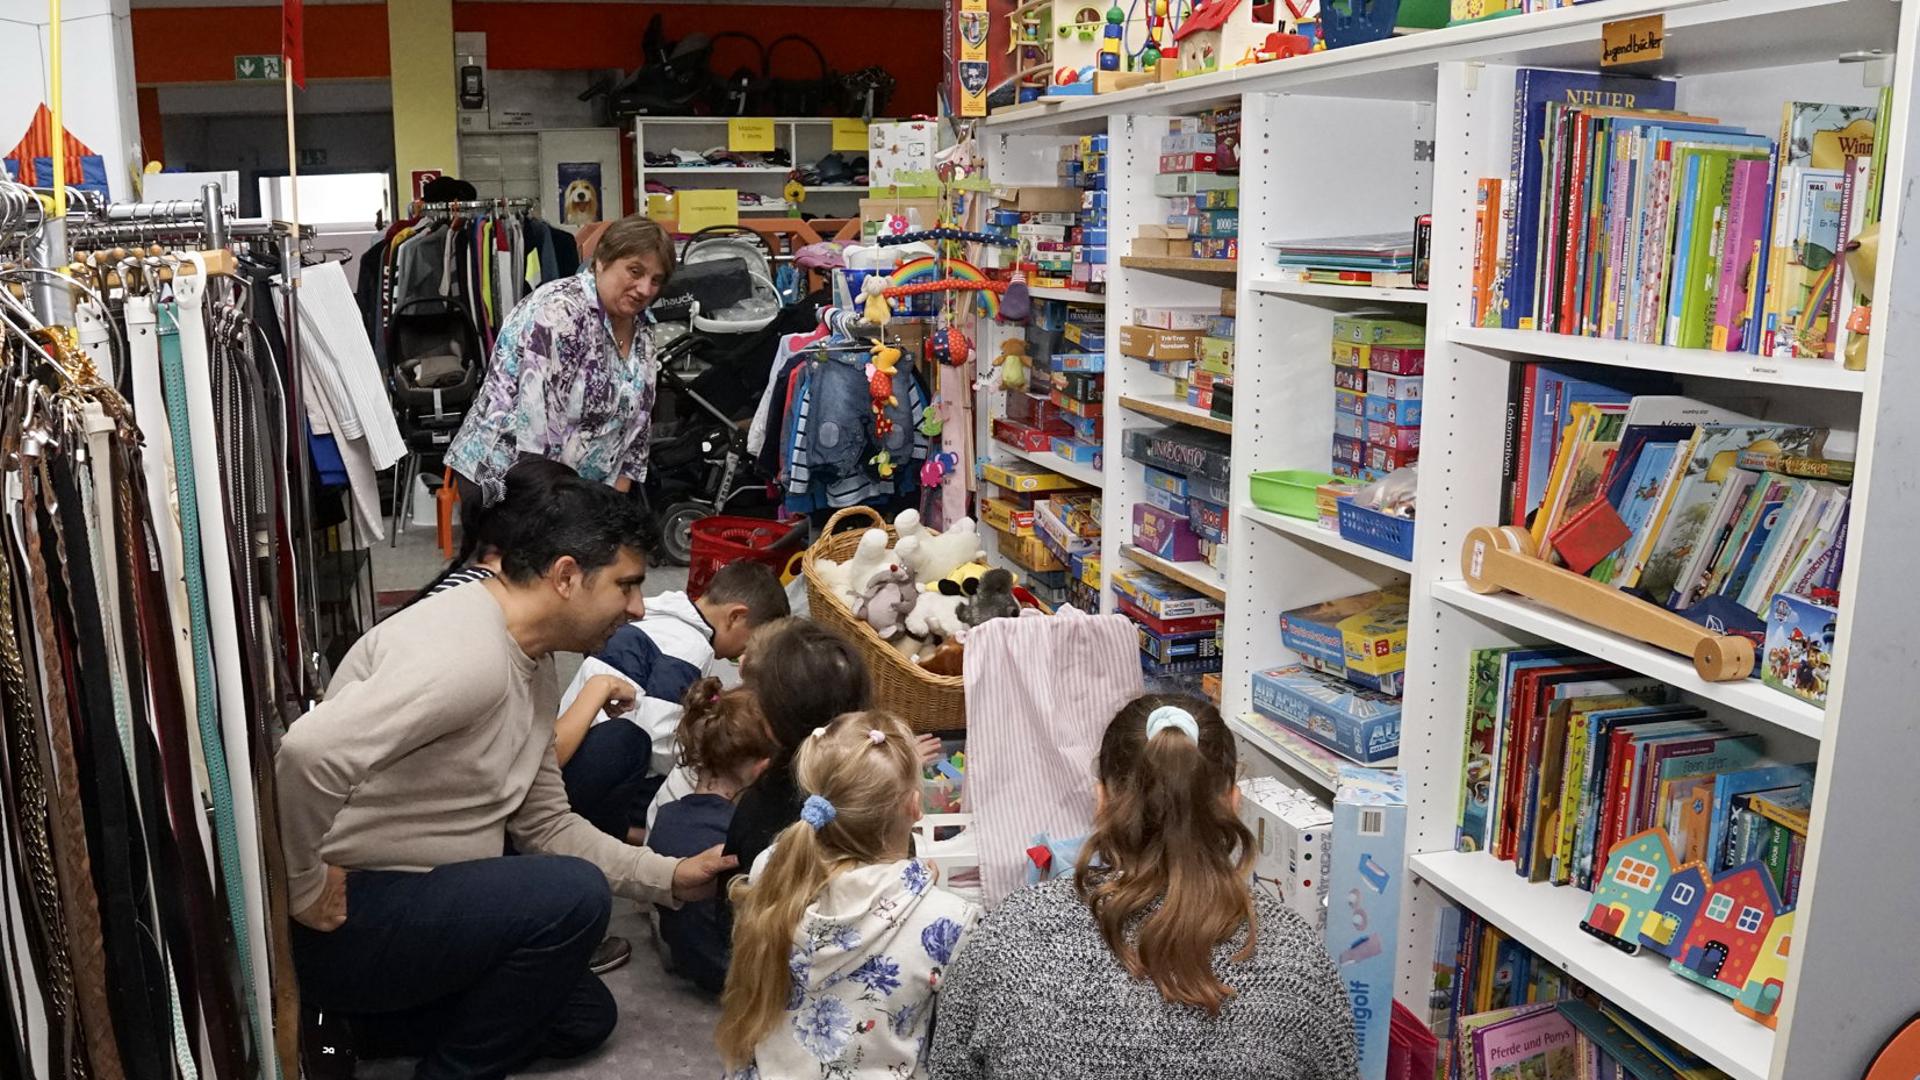 Gordana Stanicic von der Caritas in Rastatt betrachtet zusammen mit Kindern und Erwachsenen das Spielzeugangebot im Secondhandladen der Organisation.